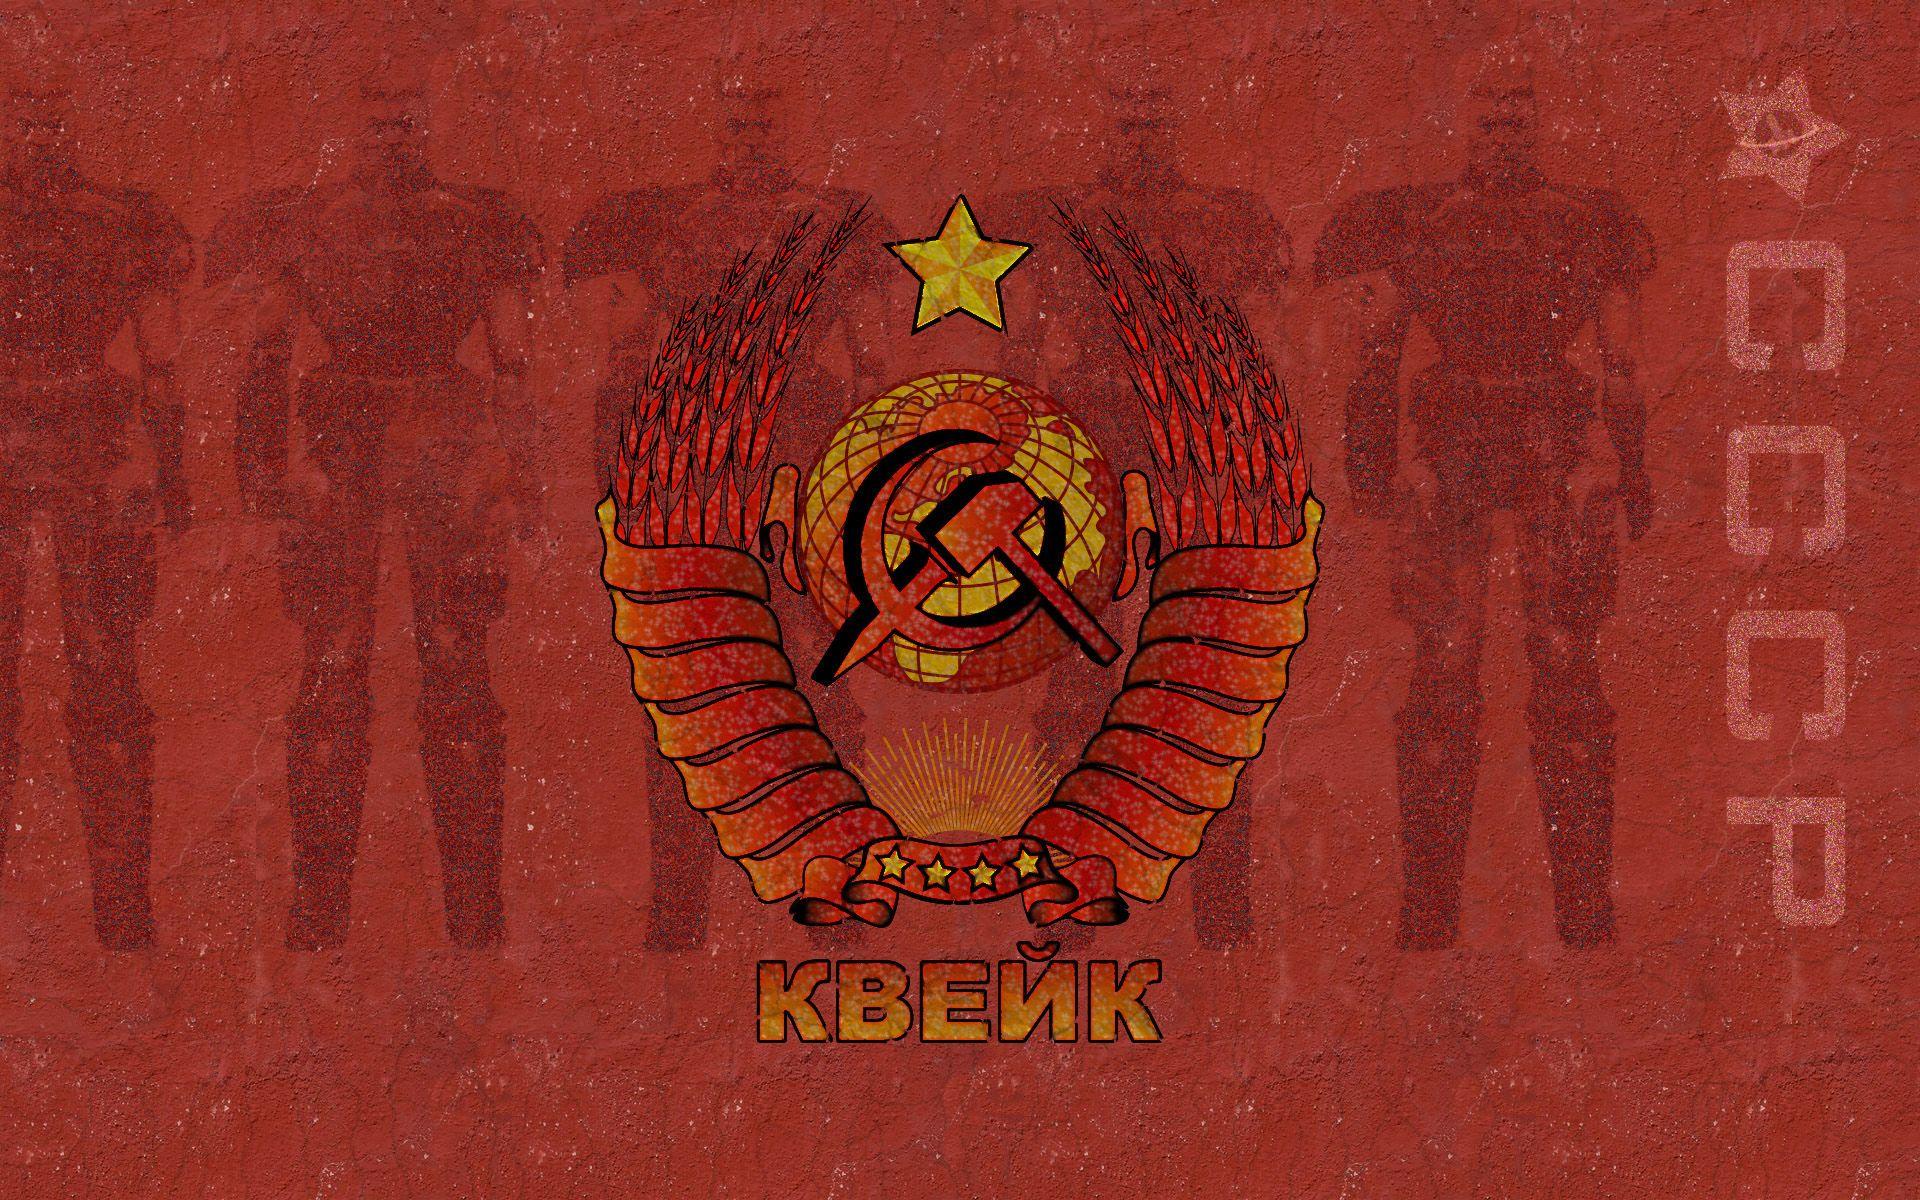 Soviet, artwork, quake, background, slideshow